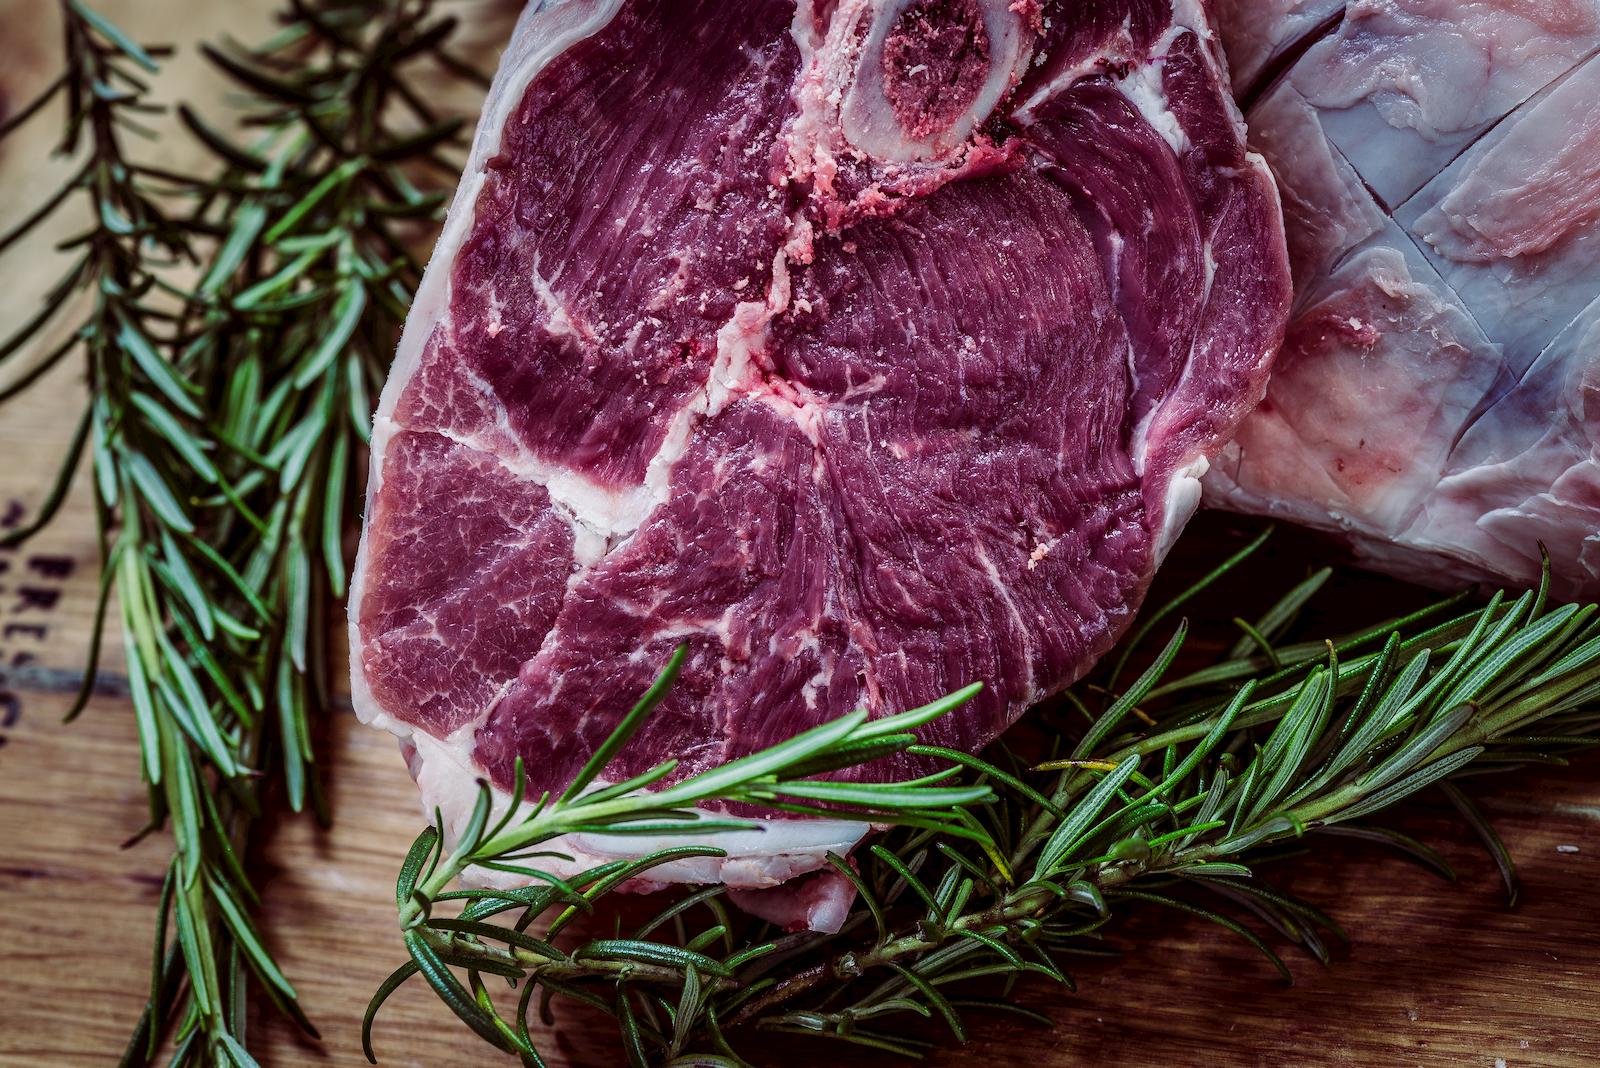 notizie dalla filiera agro zootecnica italiana sul mondo della carne